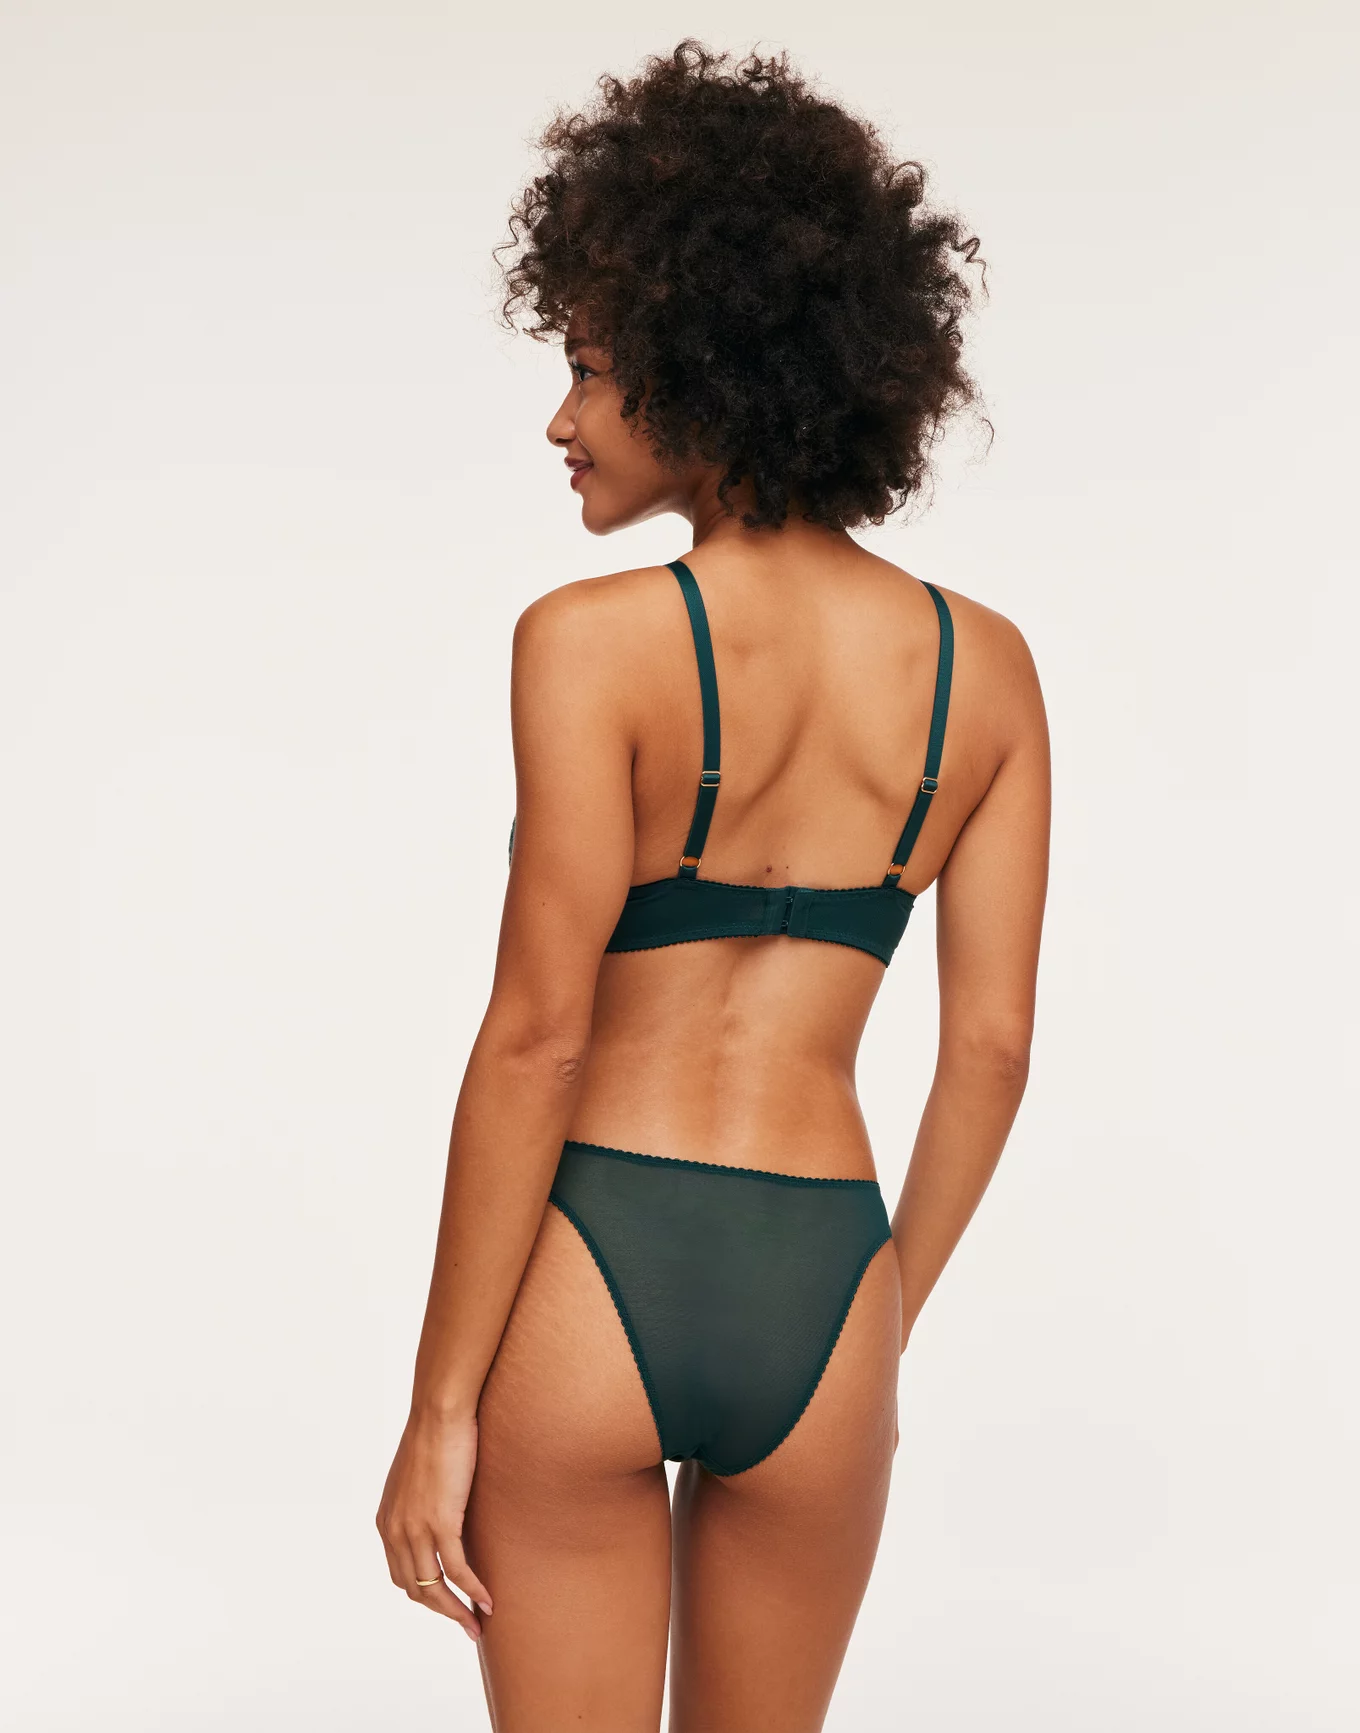 H & M - Push-up balconette bikini top - Green, Compare